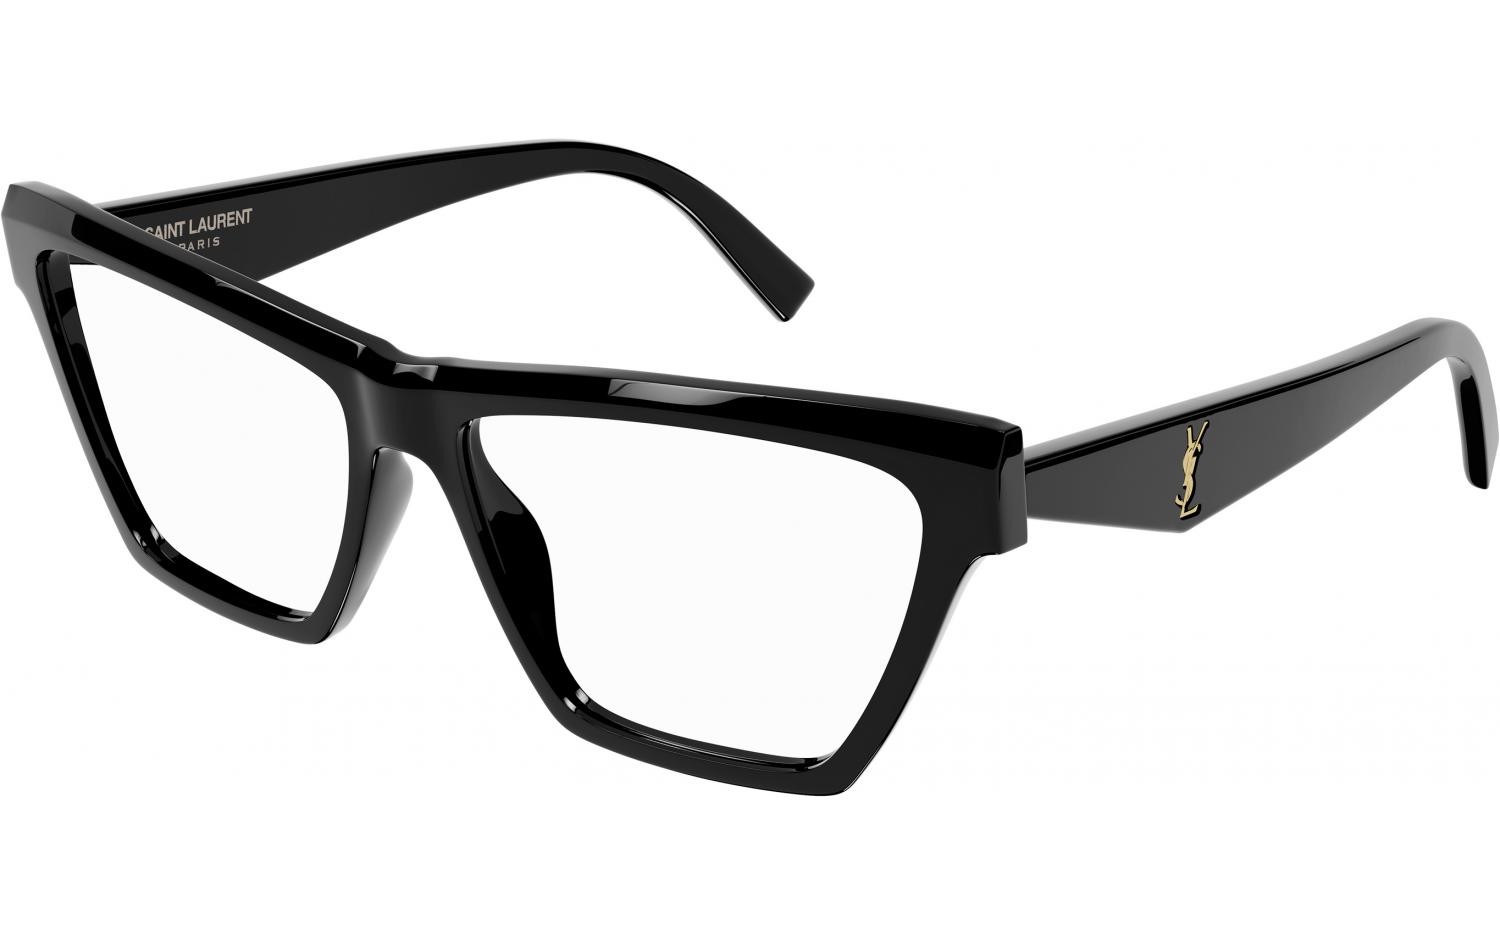 Saint Laurent 103 001 OPT - Oculos de Grau